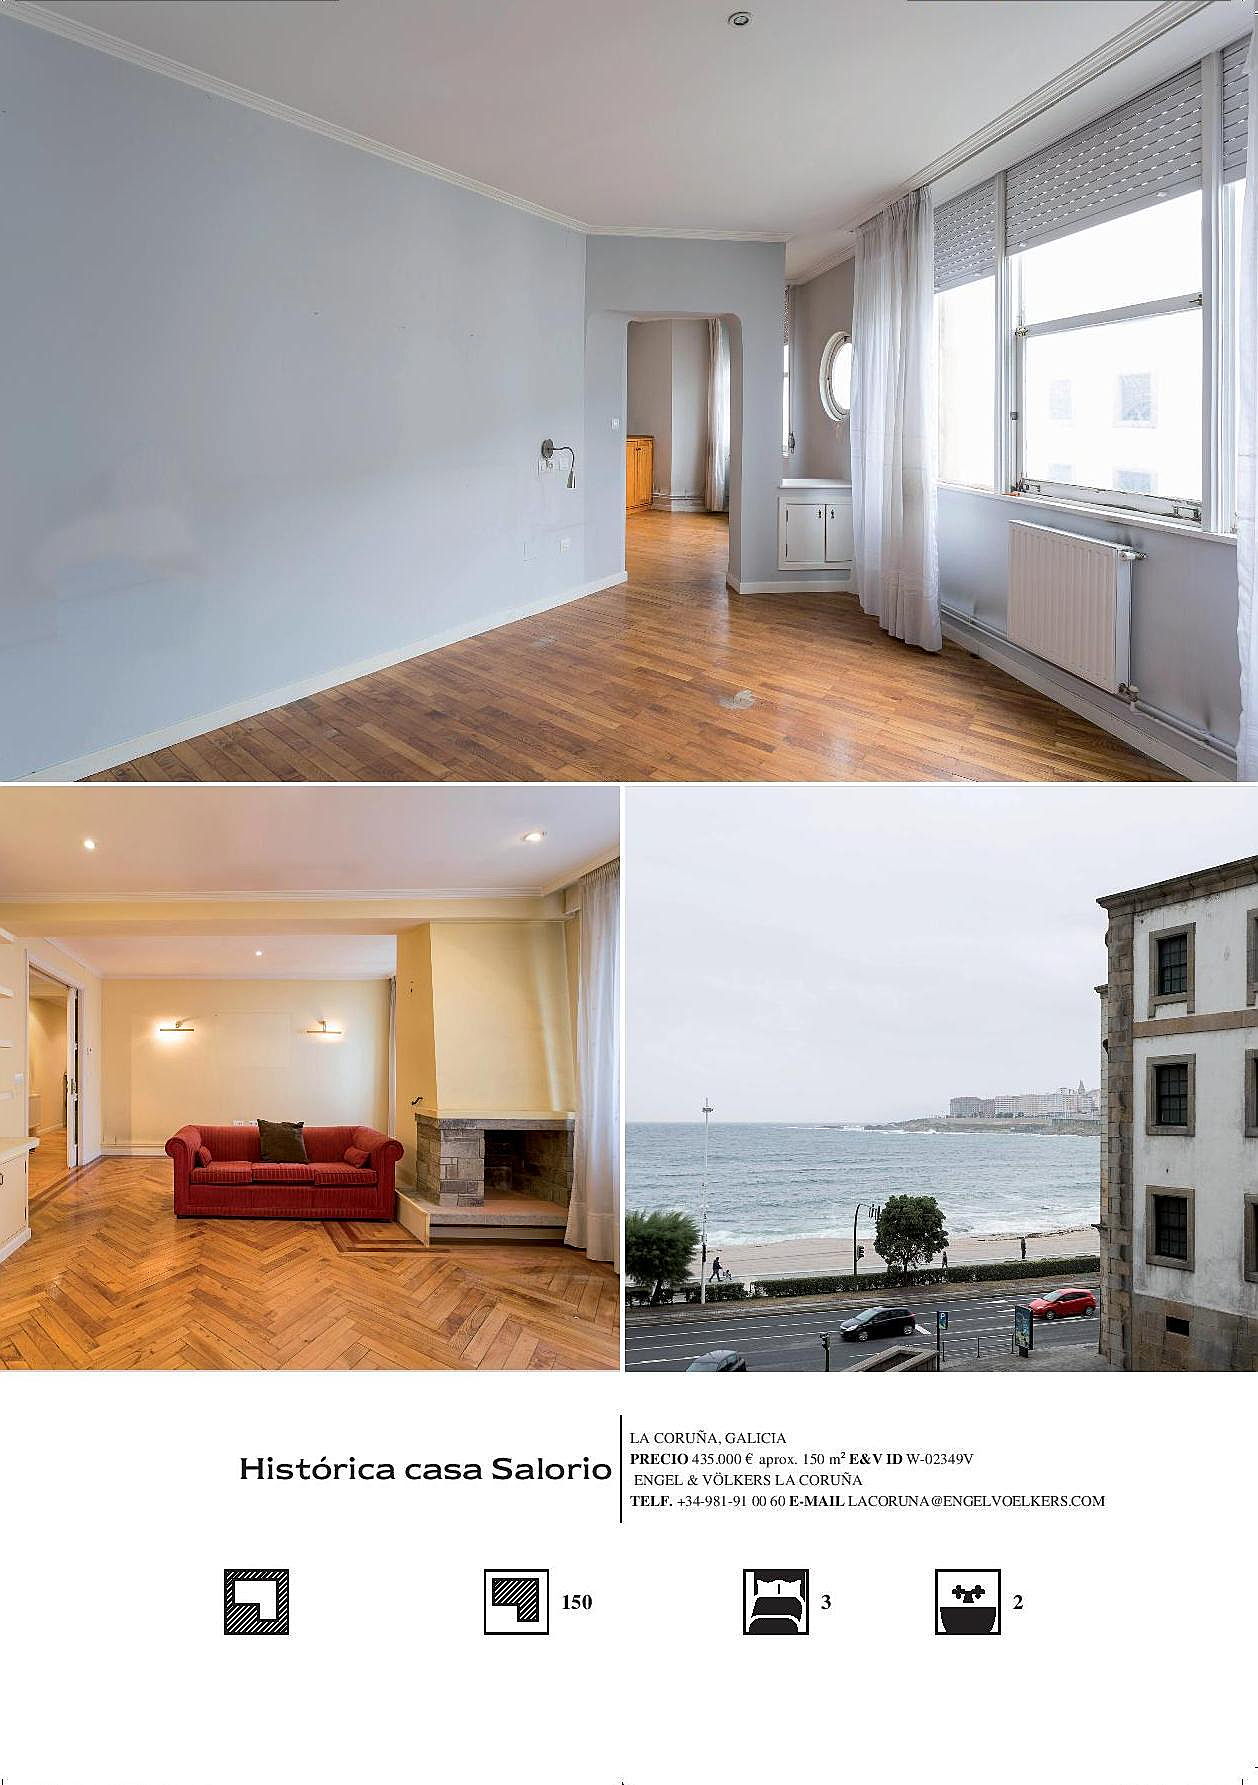  La Coruña, España
- Anuncio Expose Casa Salorio-page-002.jpg